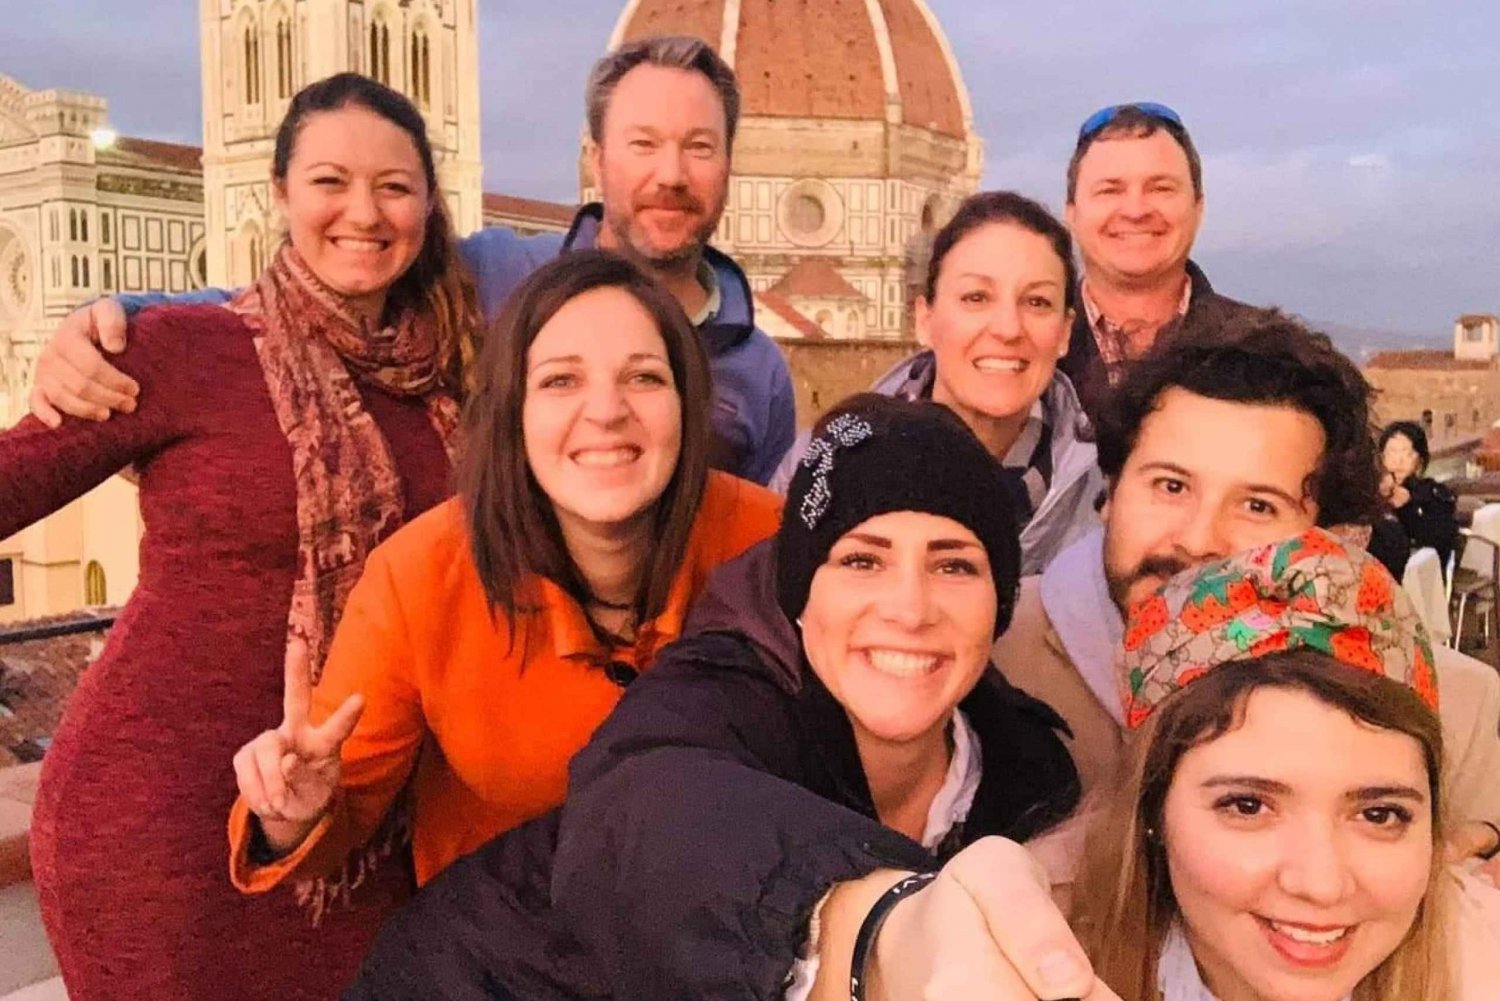 Firenze: Tour dei bar sul tetto con bevande, aperitivo e gelato